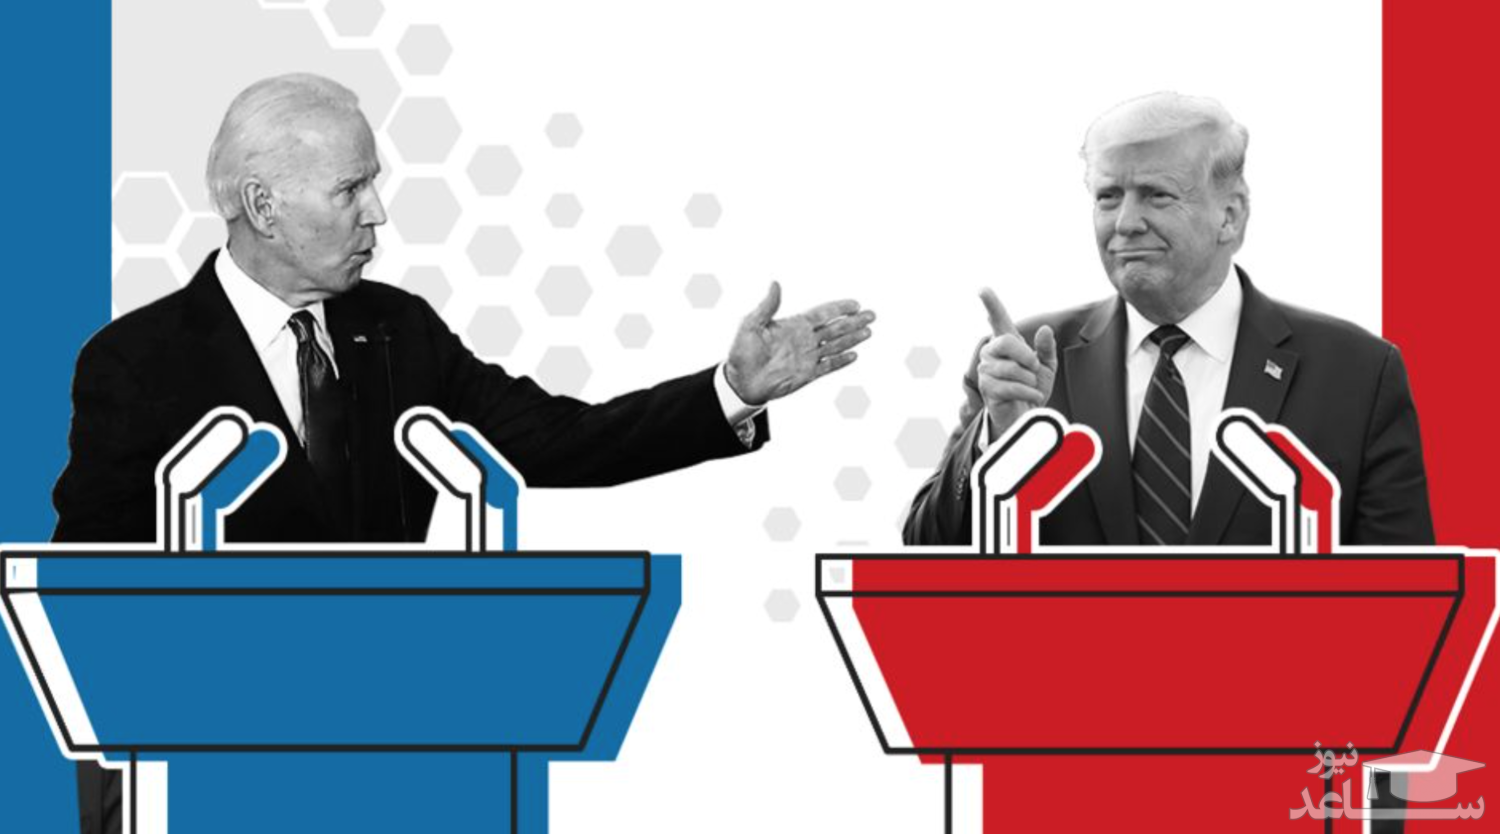 آخرین وضعیت آراء الکترال ۲ کاندیدای انتخابات آمریکا